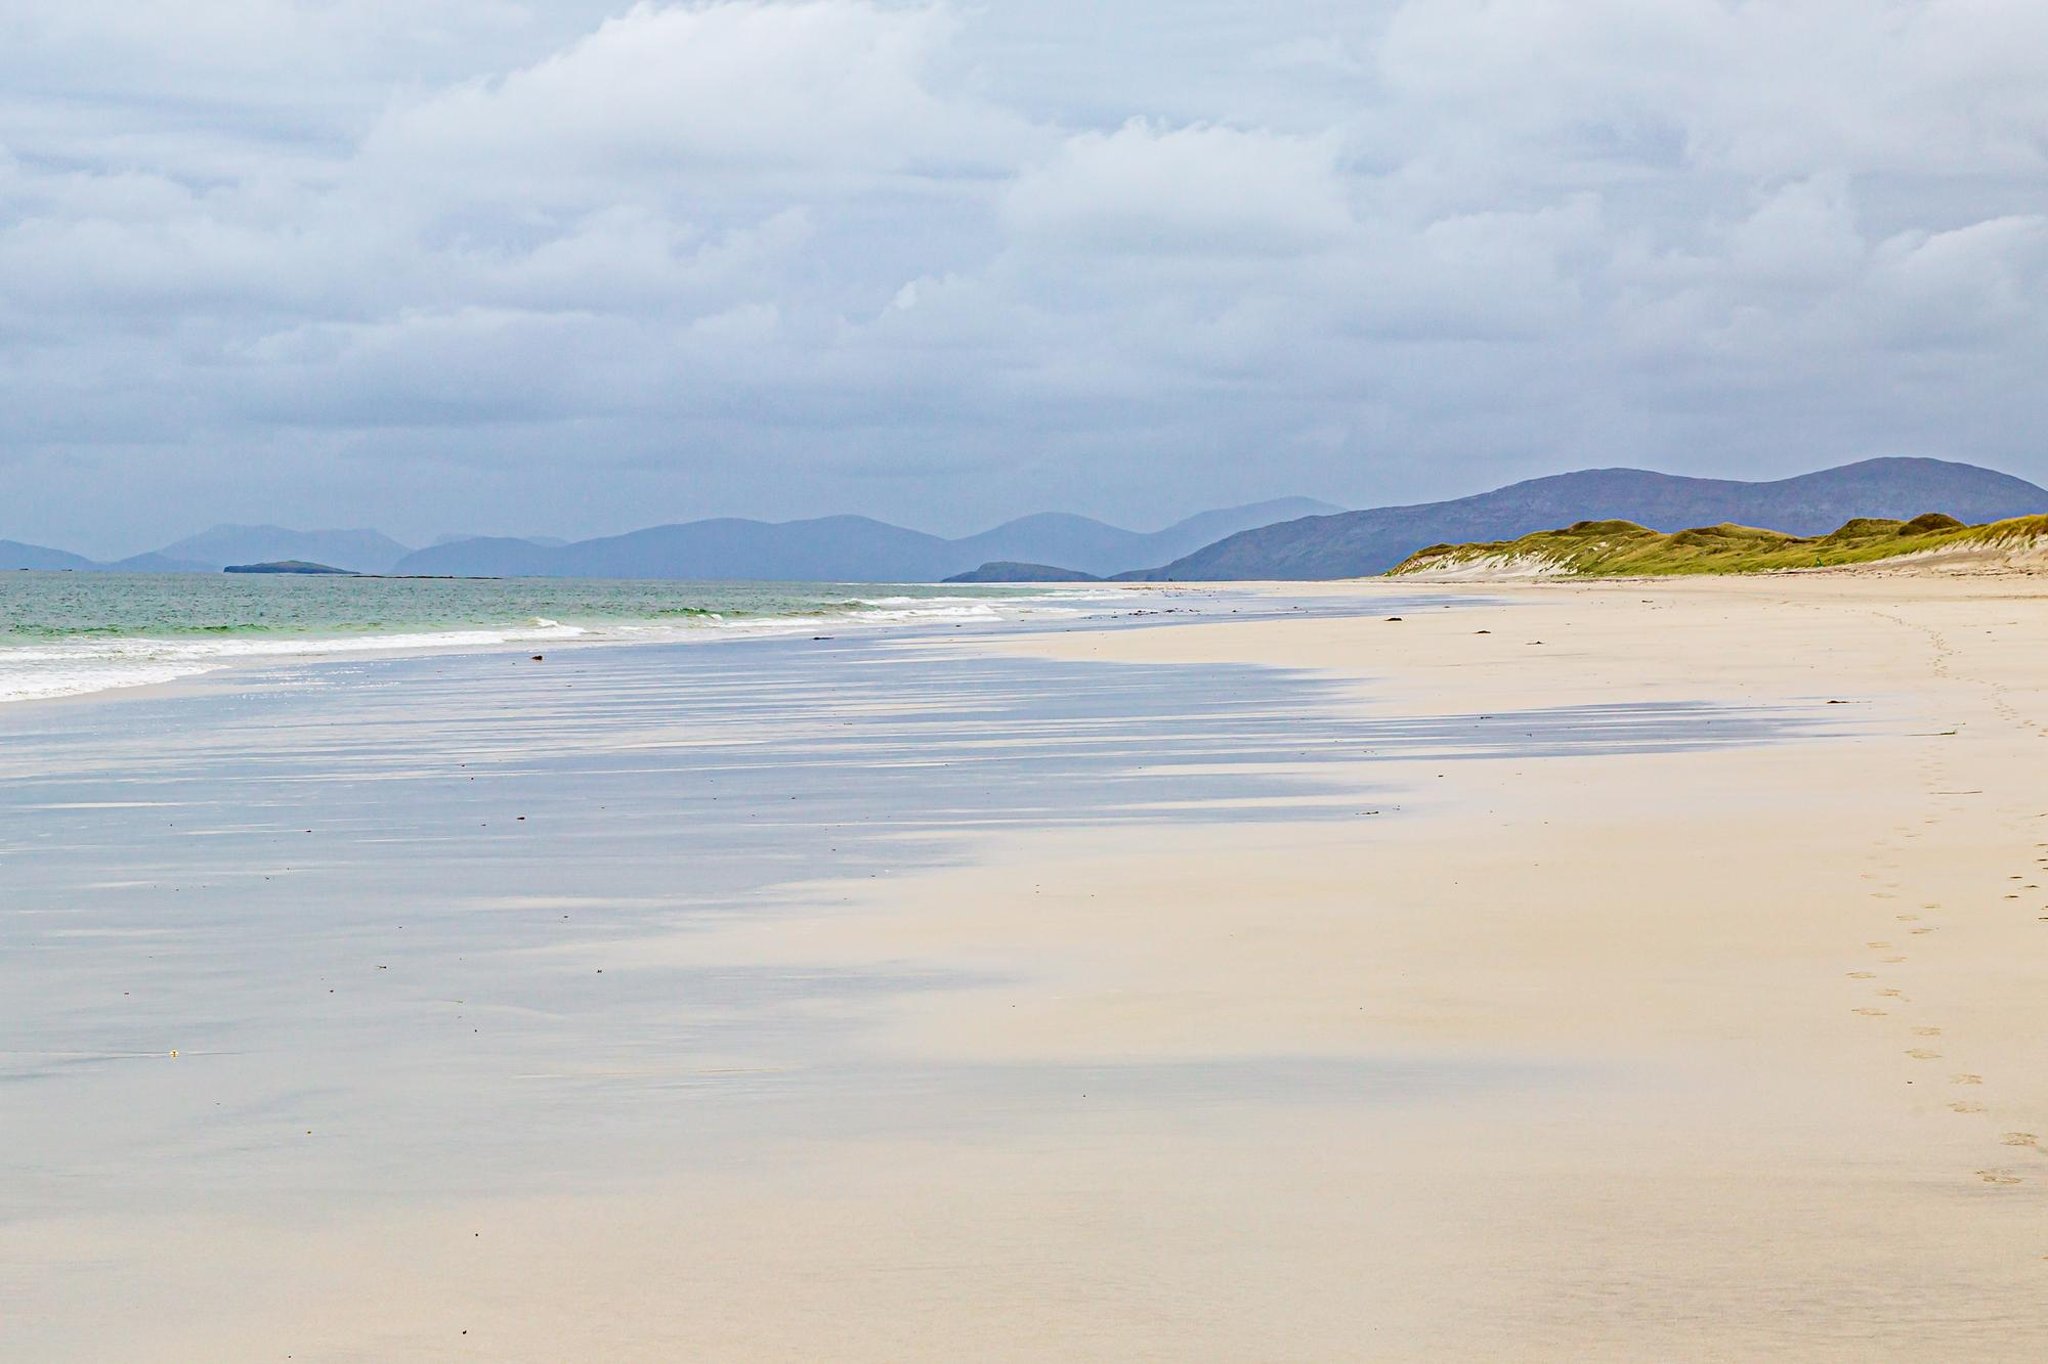 Η παραλία Hebridean μήκους τριών μιλίων ονομάστηκε μια από τις καλύτερες στην Ευρώπη